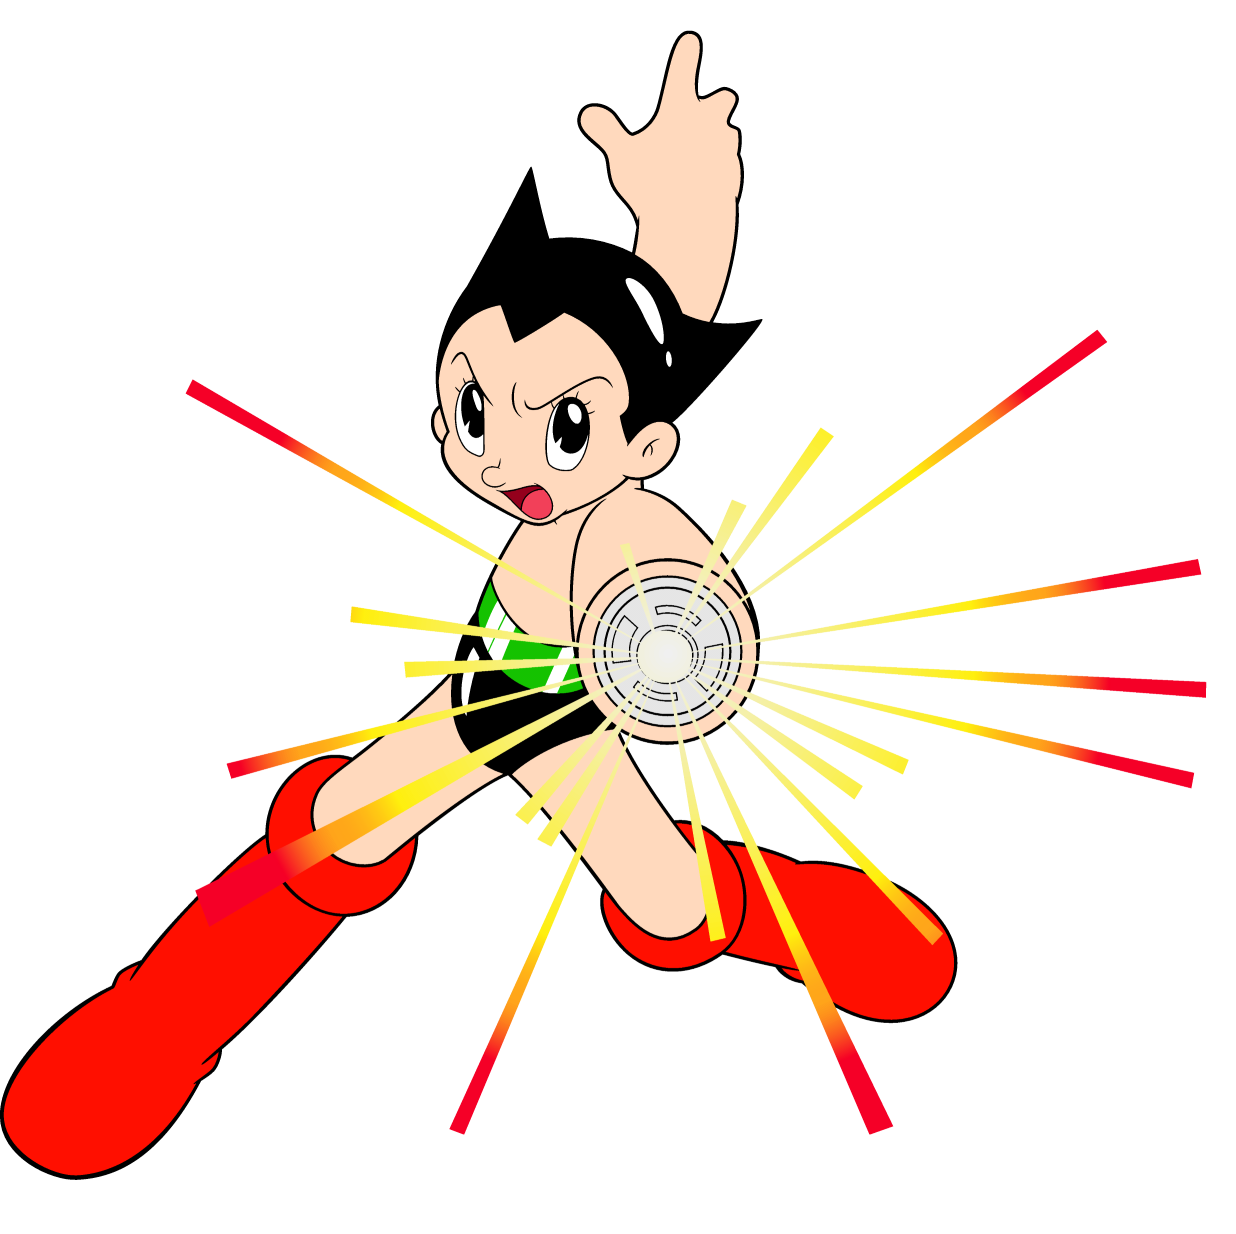 Astro Boy | VS Battles Wiki | FANDOM powered by Wikia